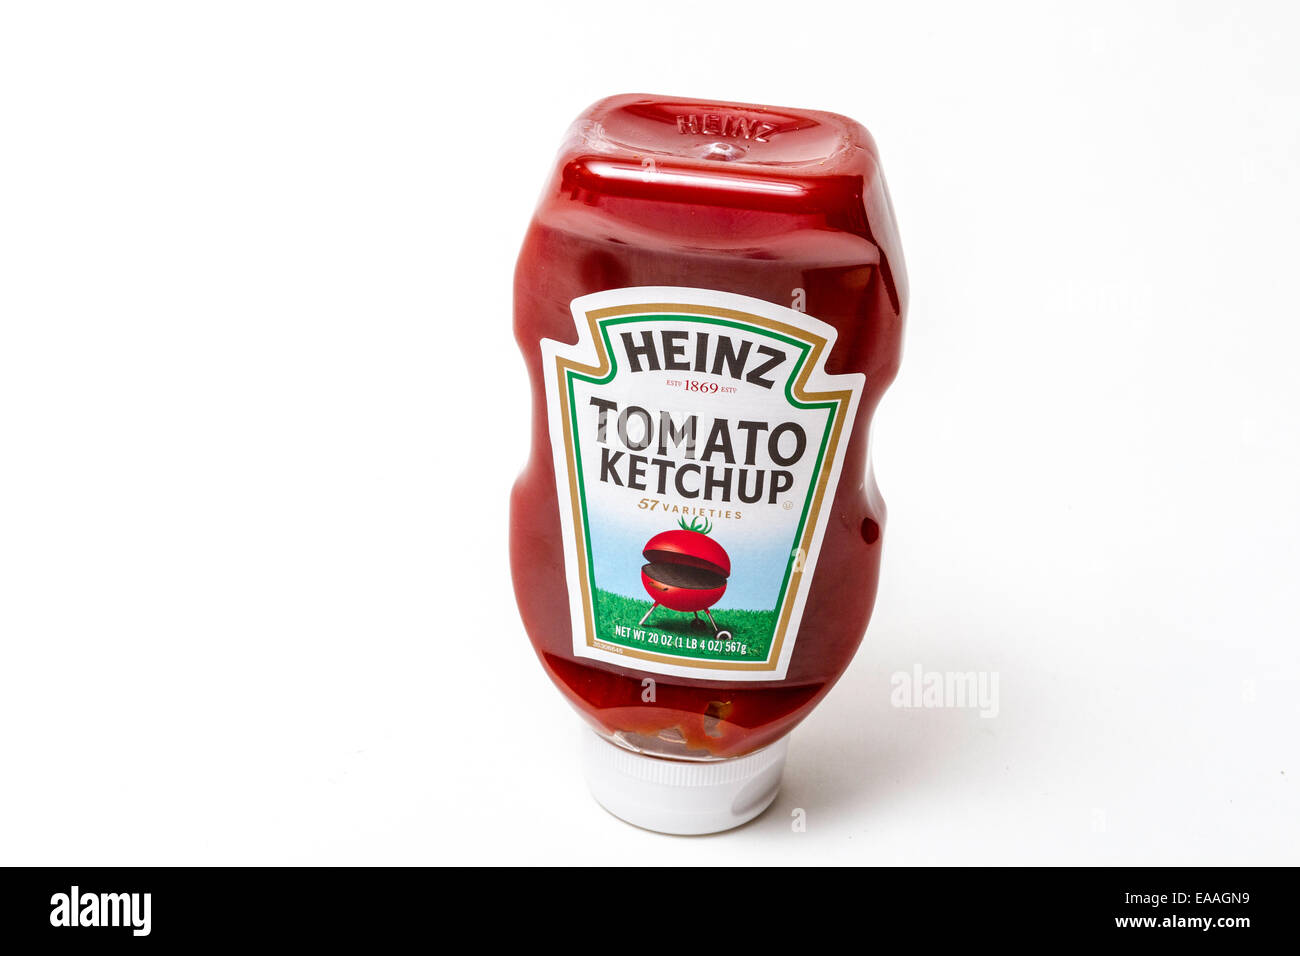 Heinz Tomato Ketchup dans une bouteille de plastique avec un barbecue en forme de tomate sur l'étiquette Banque D'Images